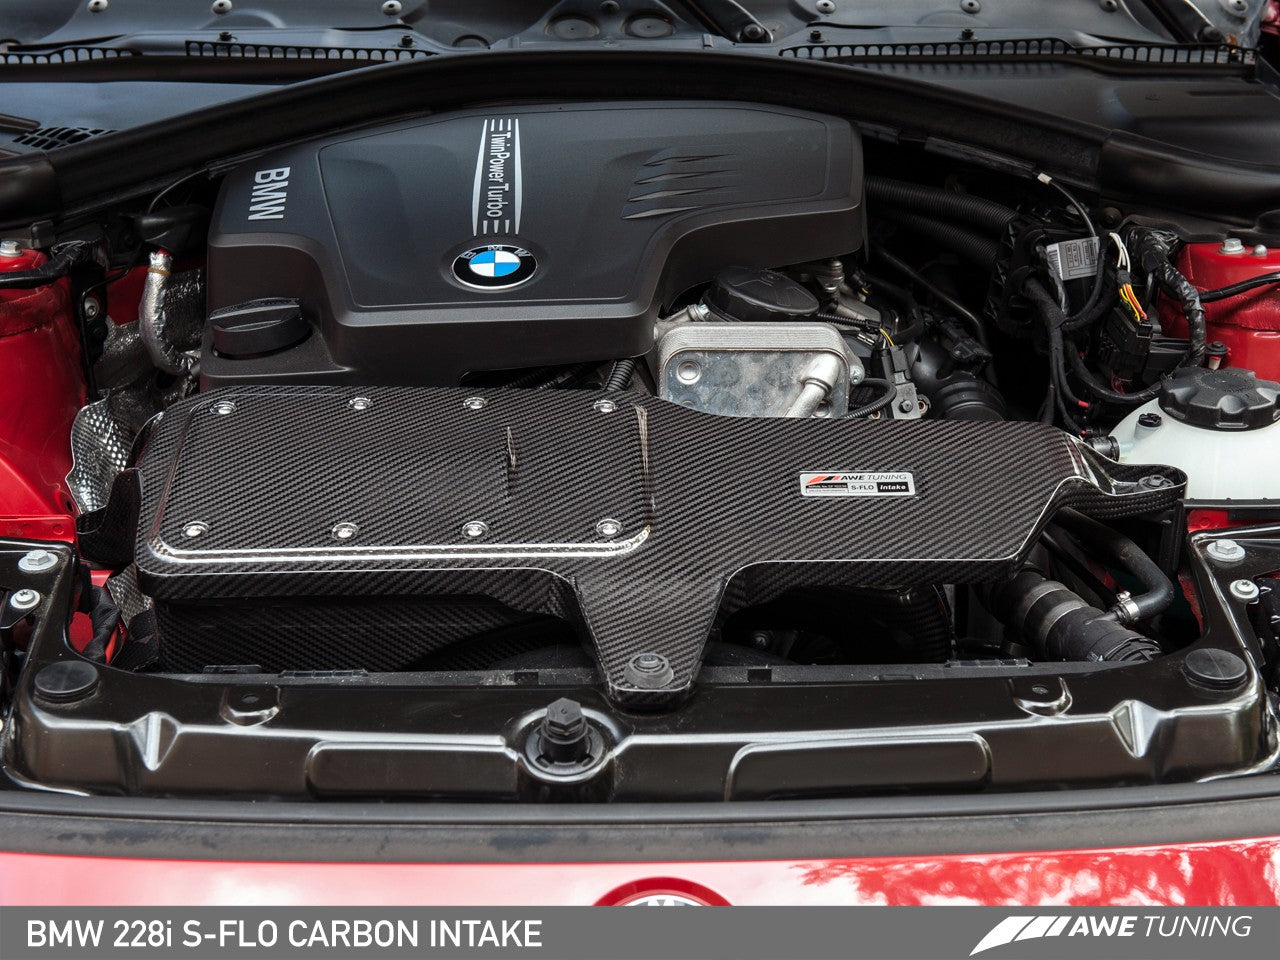 AWE Tuning BMW F30 320i S-FLO Carbon Intake